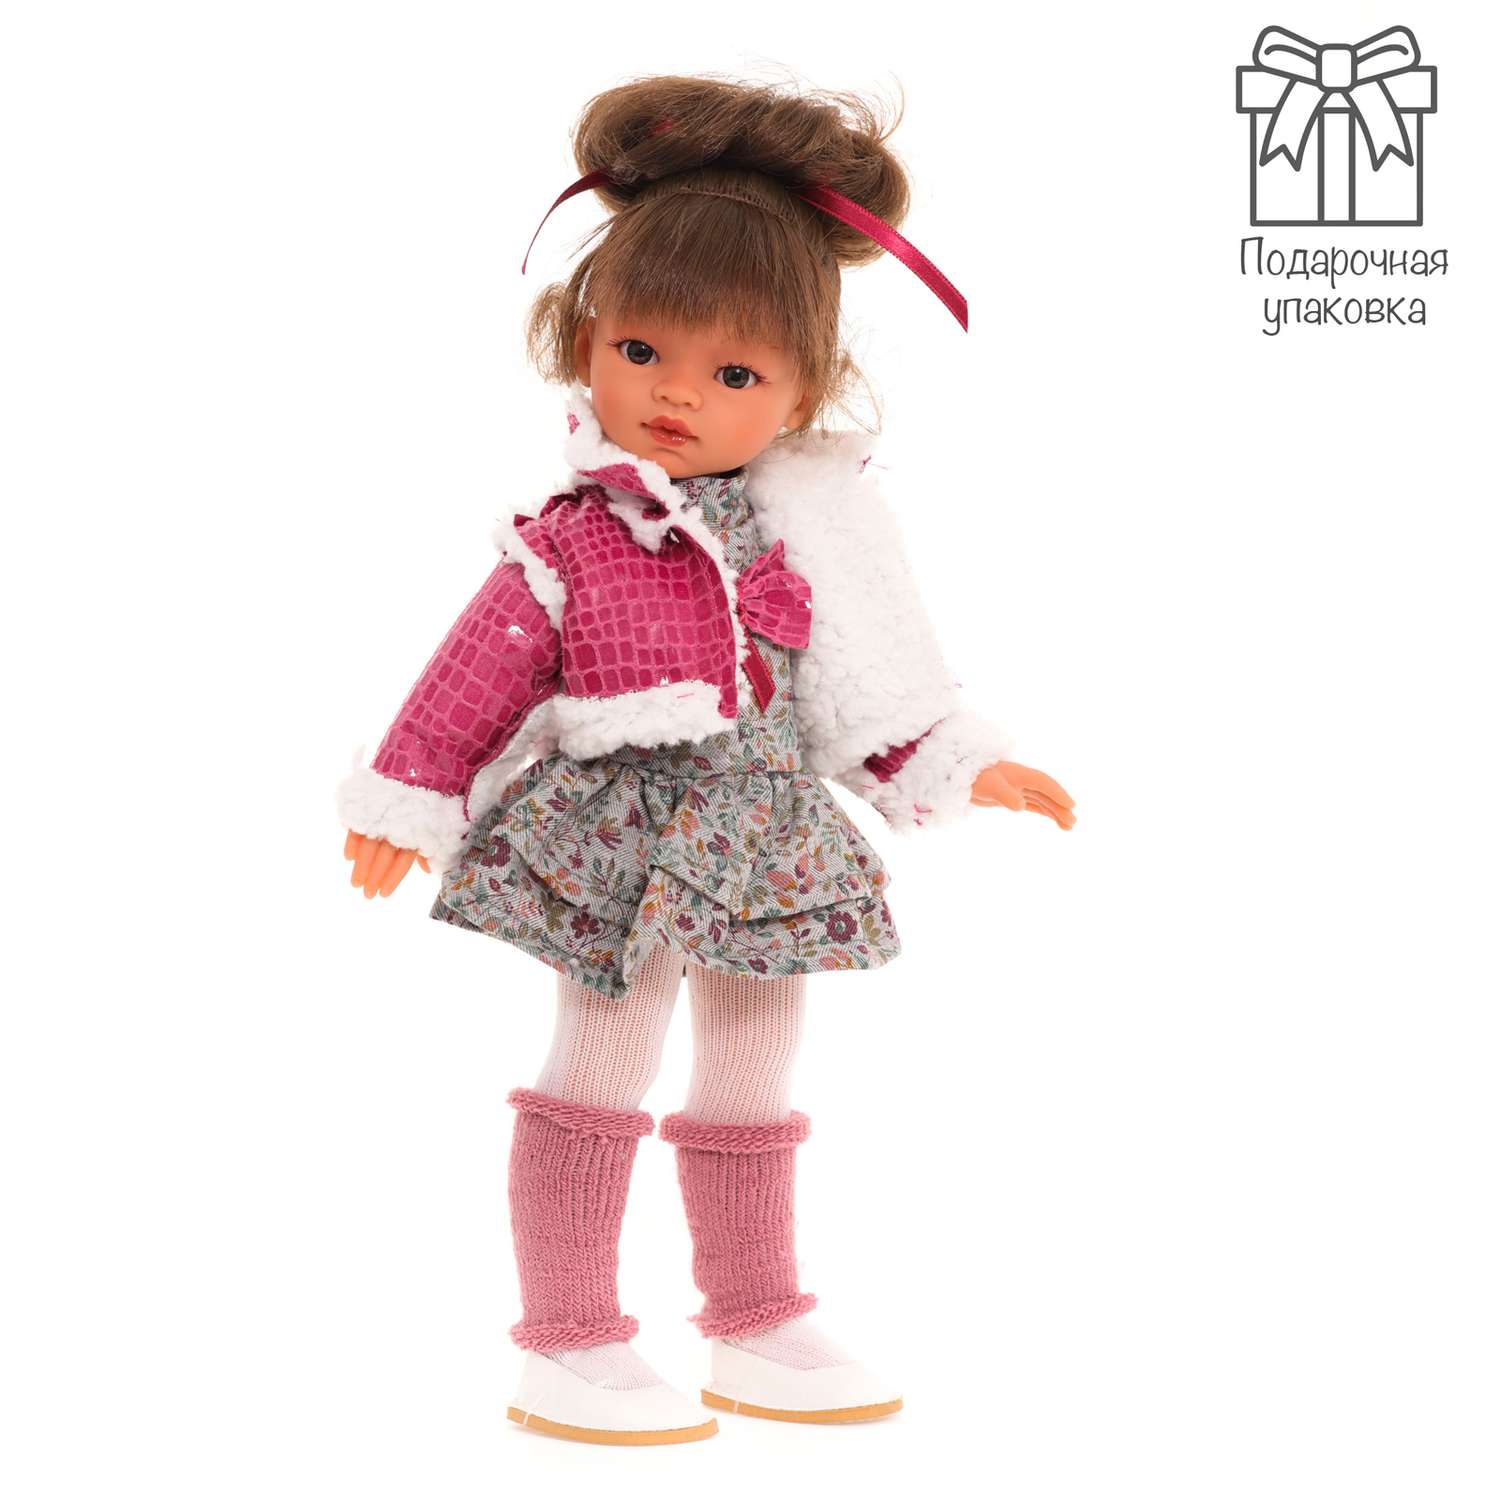 Кукла девочка Antonio Juan Ноа модный образ 33 см виниловая 25195 - фото 1